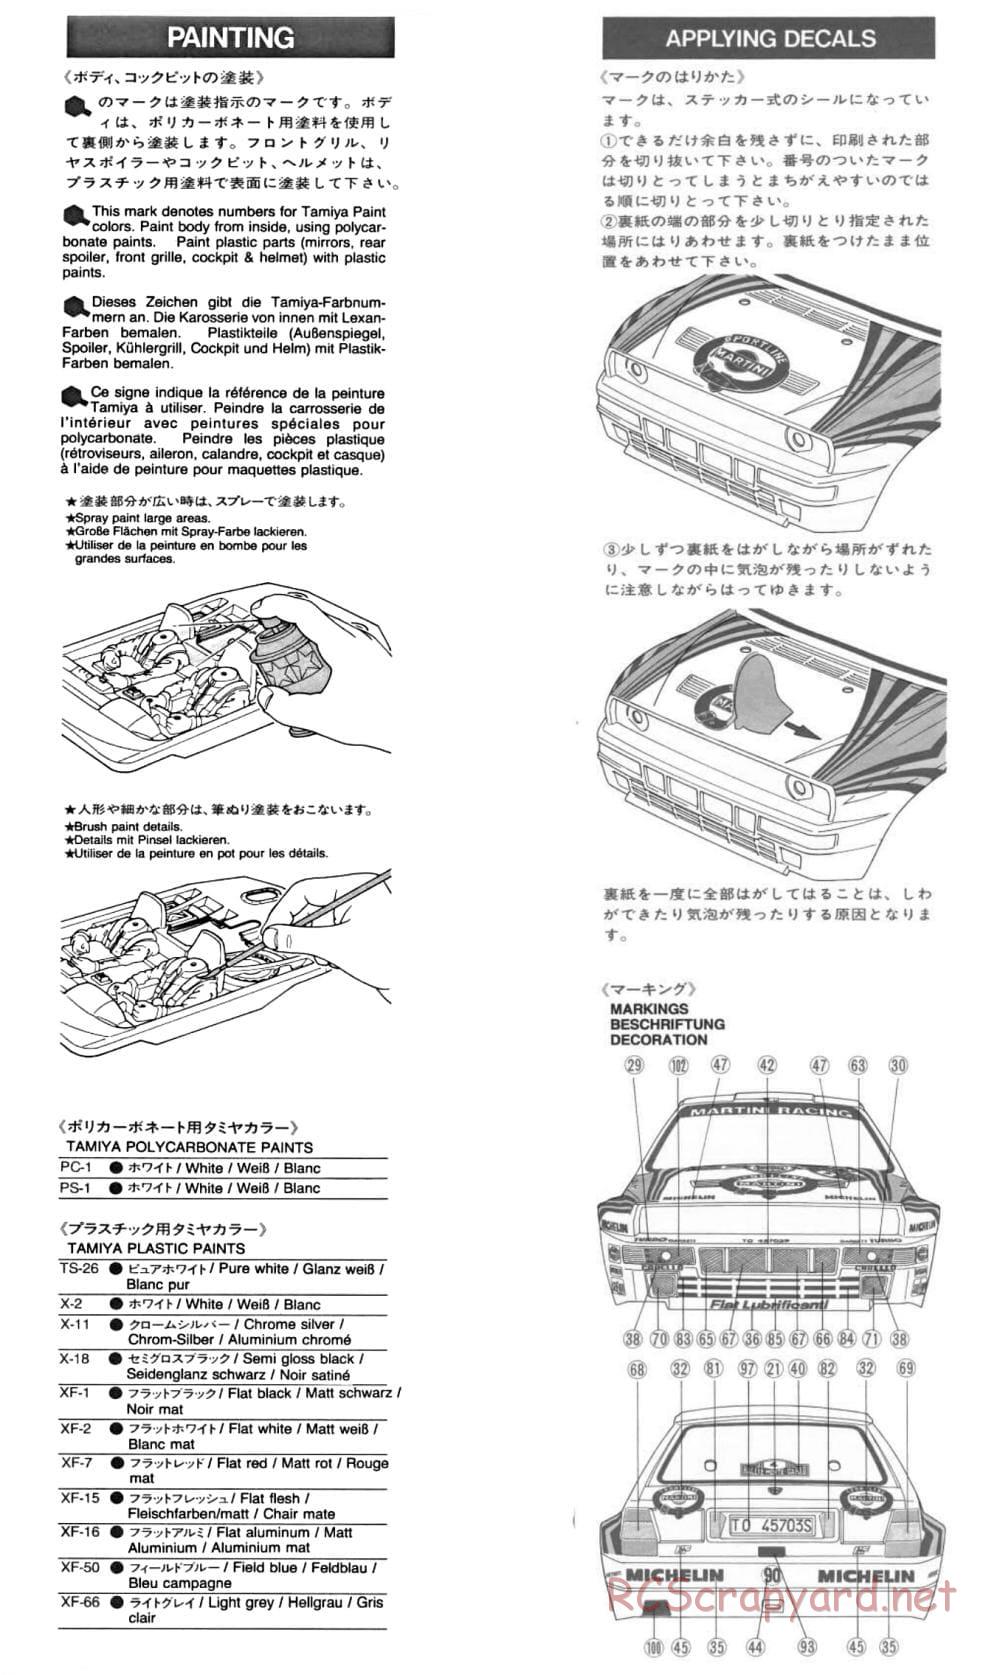 Tamiya - Lancia Delta HF Integrale - TA-01 Chassis - Manual - Page 19